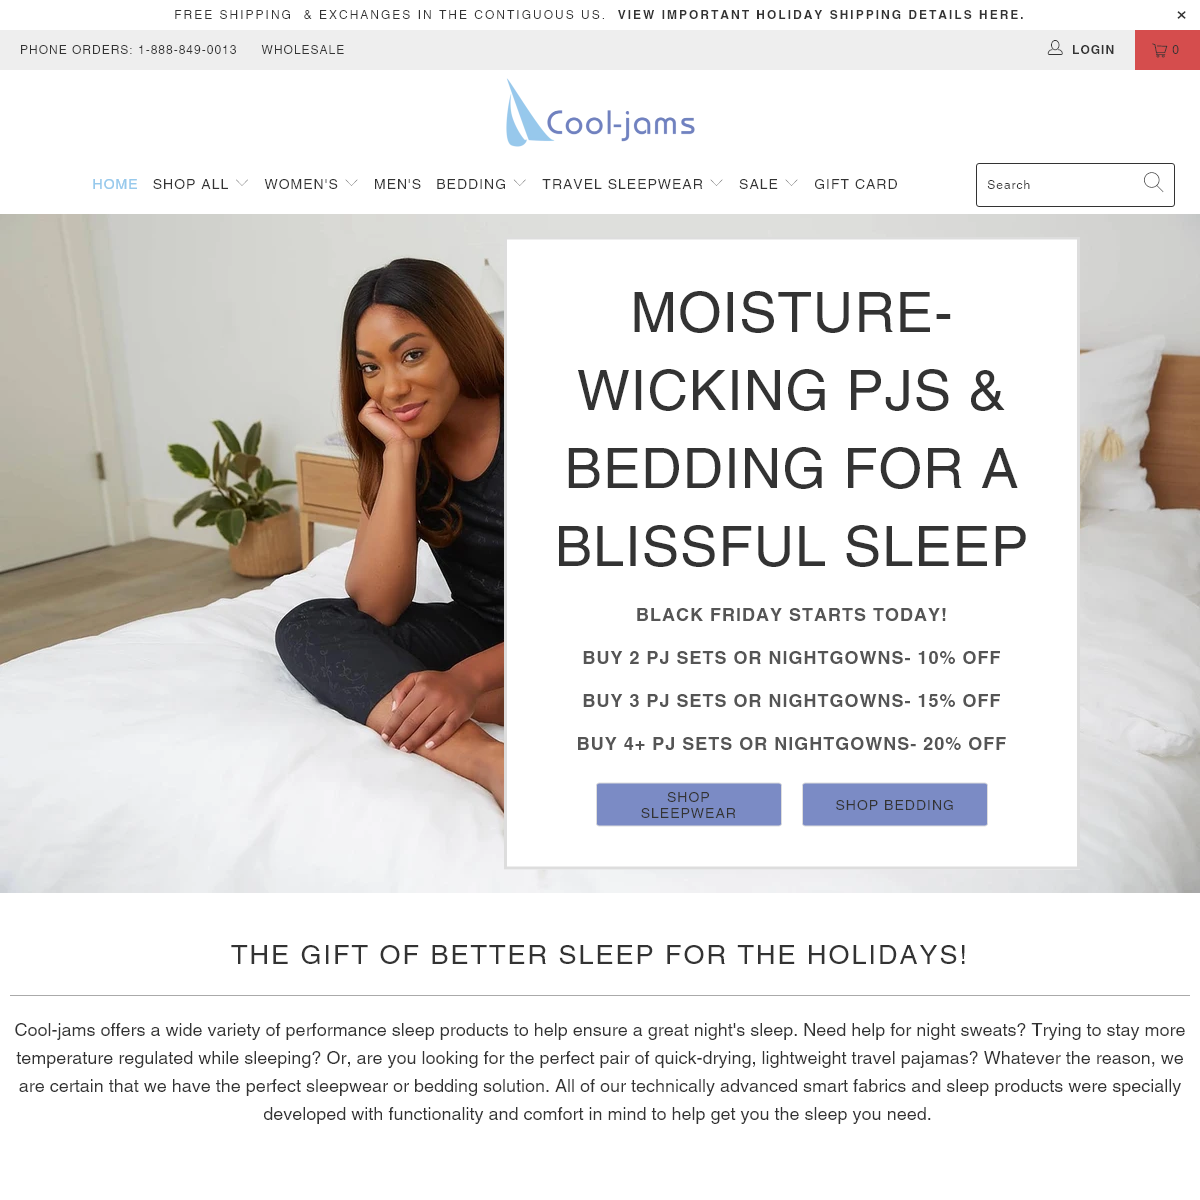 Moisture Wicking Sleepwear, Bedding, & Cooling Pajamas - Cool-jams